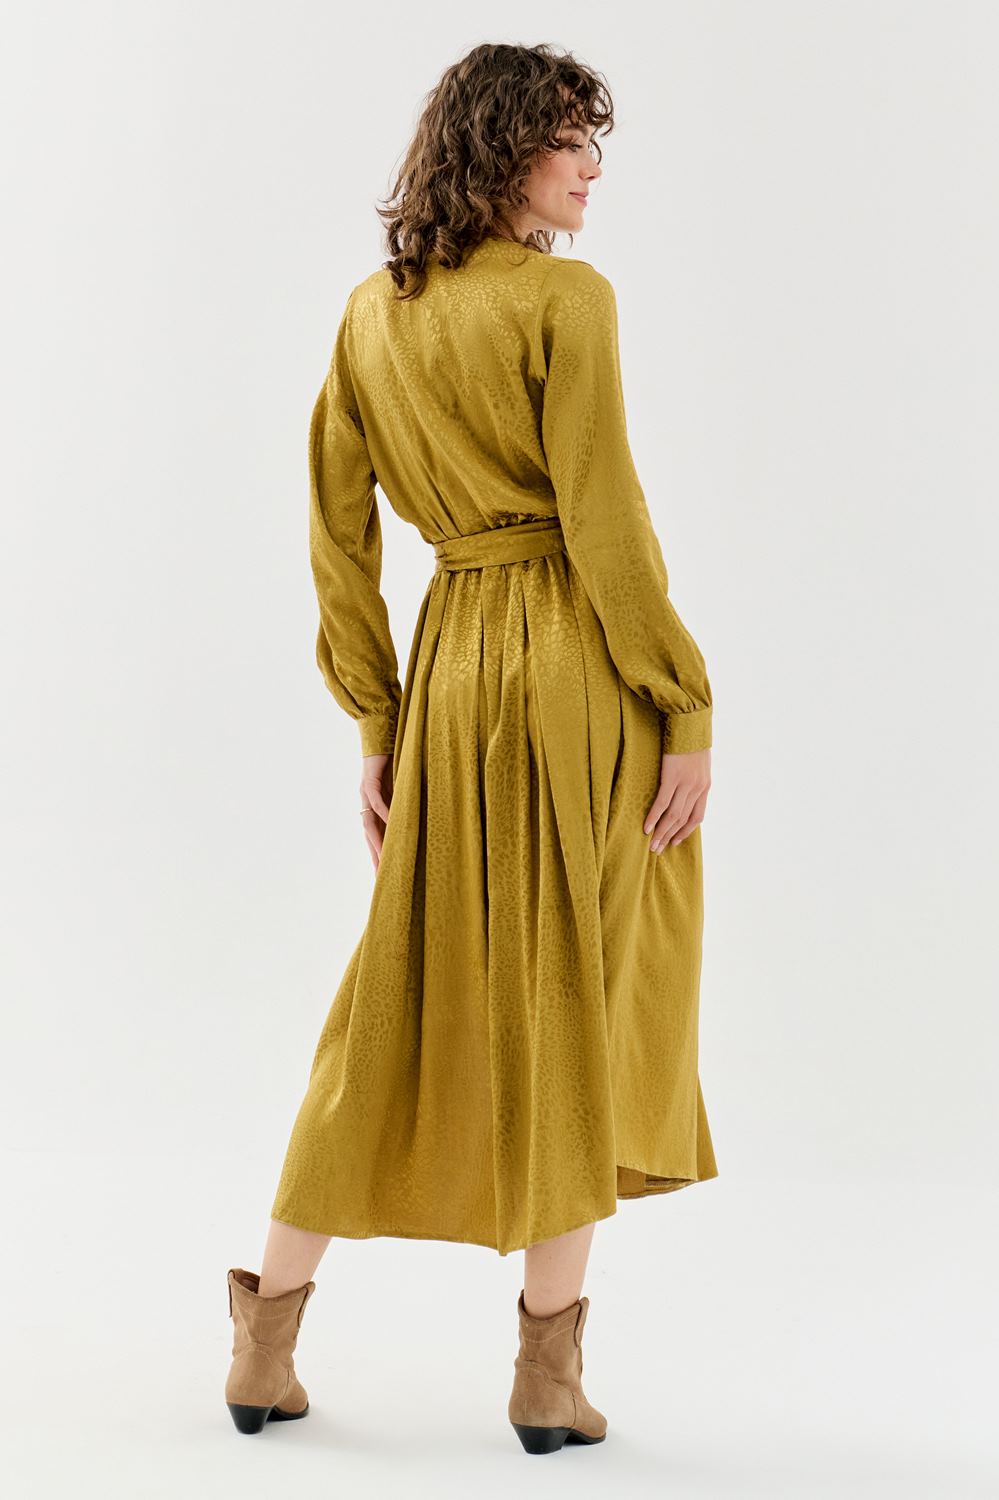 Golden Cedar waist dress